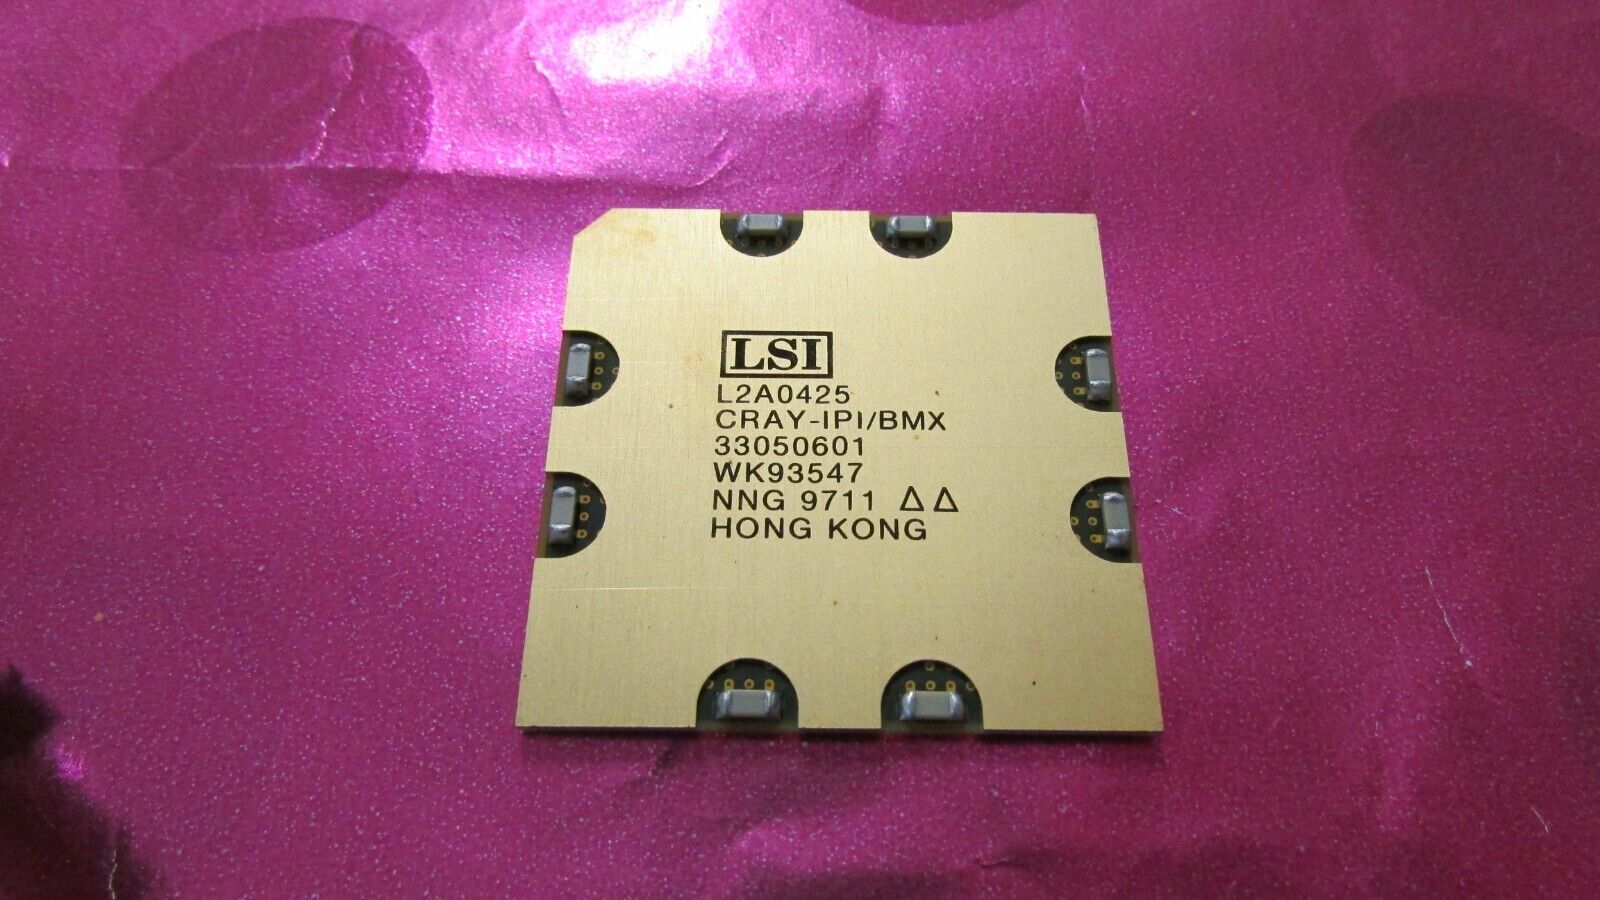 Lot 1 New LSI L2A0425 CRAY-IPI/BMX Vintage BGA WK93547 IC/CPU/Processor Gold Top